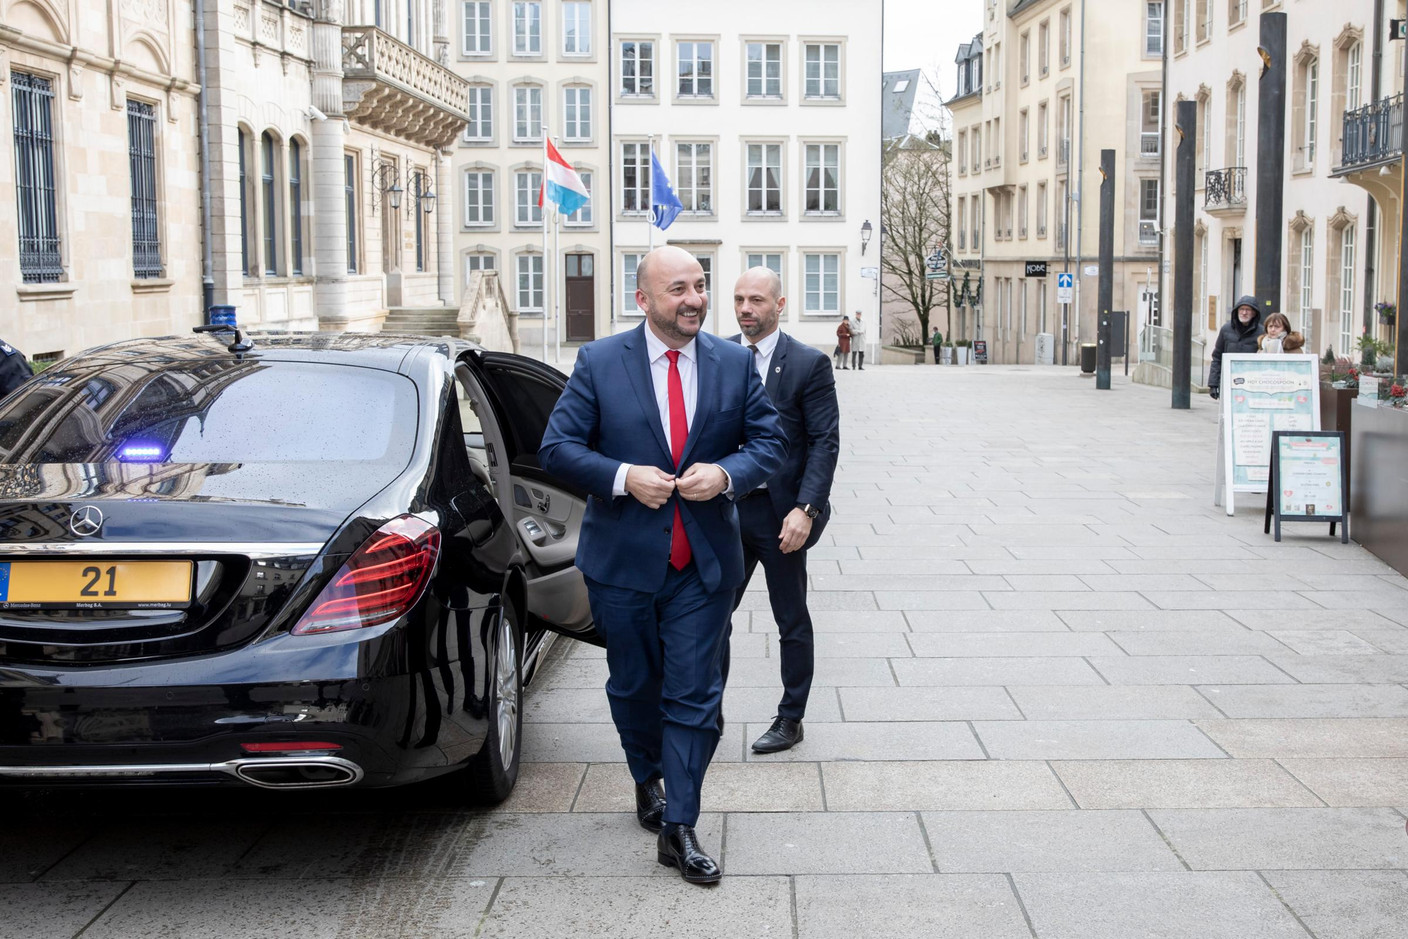 Les adieux d’Étienne Schneider en tant que membre du gouvernement. Tout sourire au moment d’arriver pour son audience auprès du Grand-Duc. (Photo: Jan Hanrion/Maison Moderne)